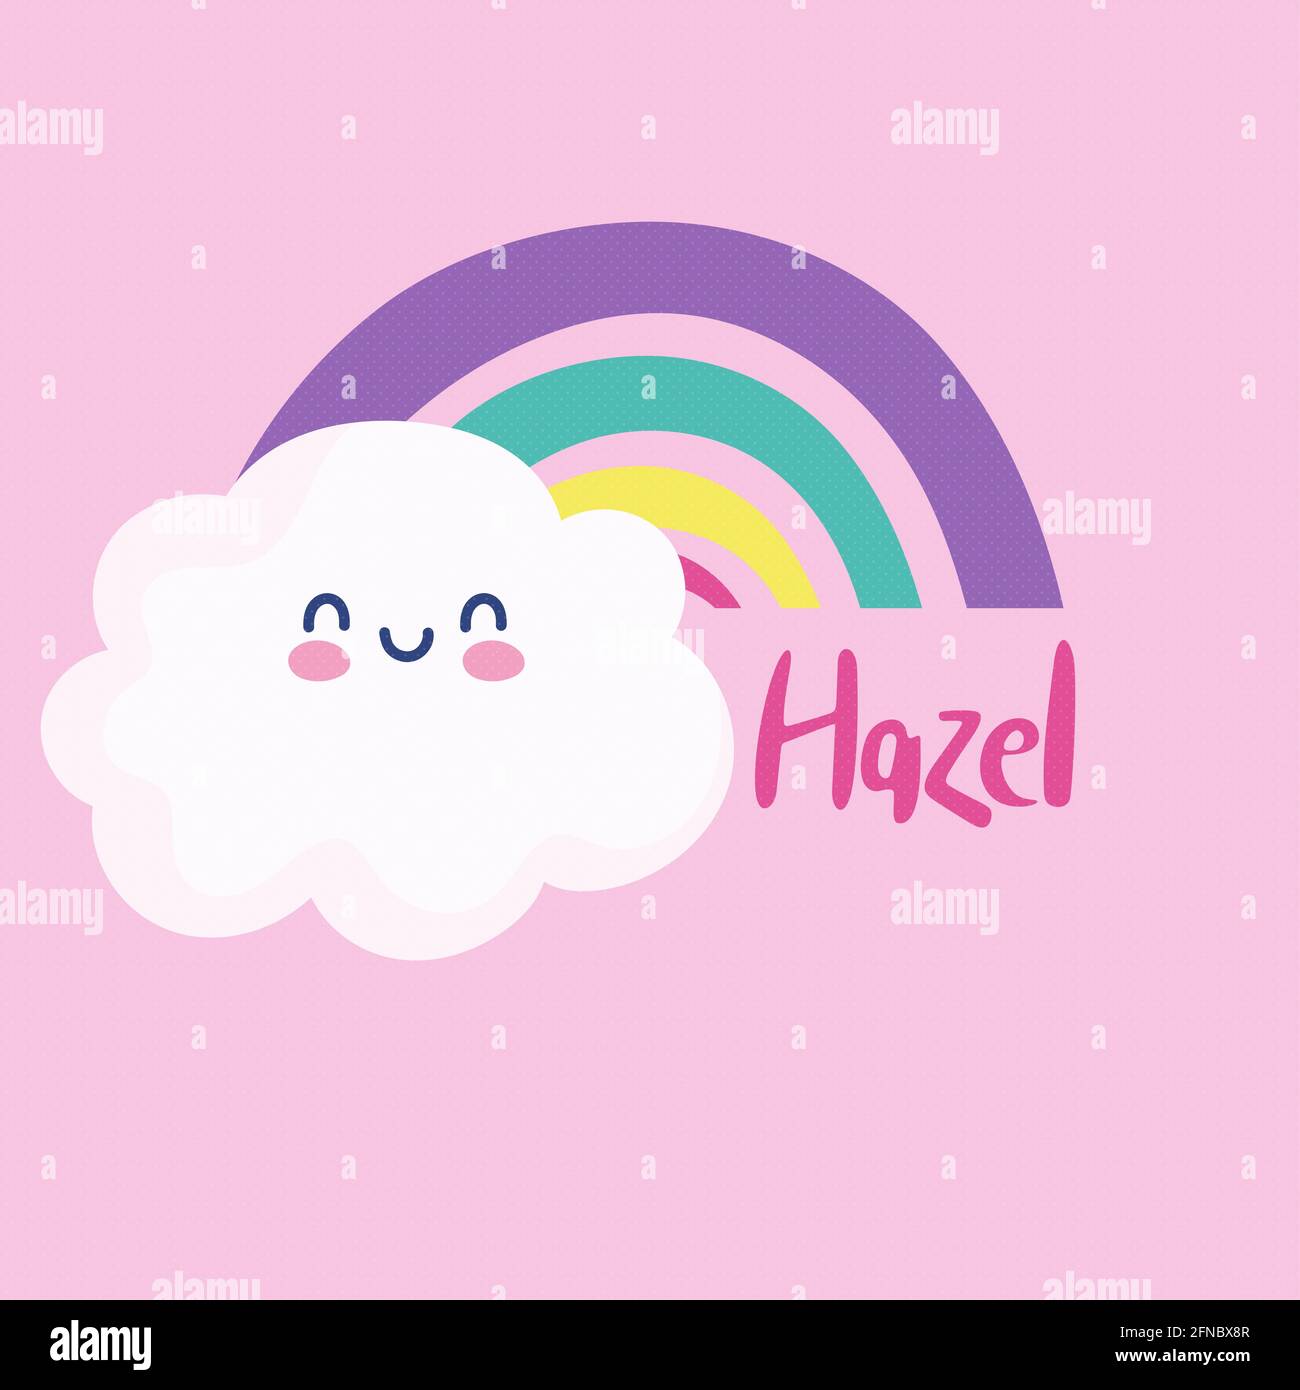 hazel girl name Stock Photo